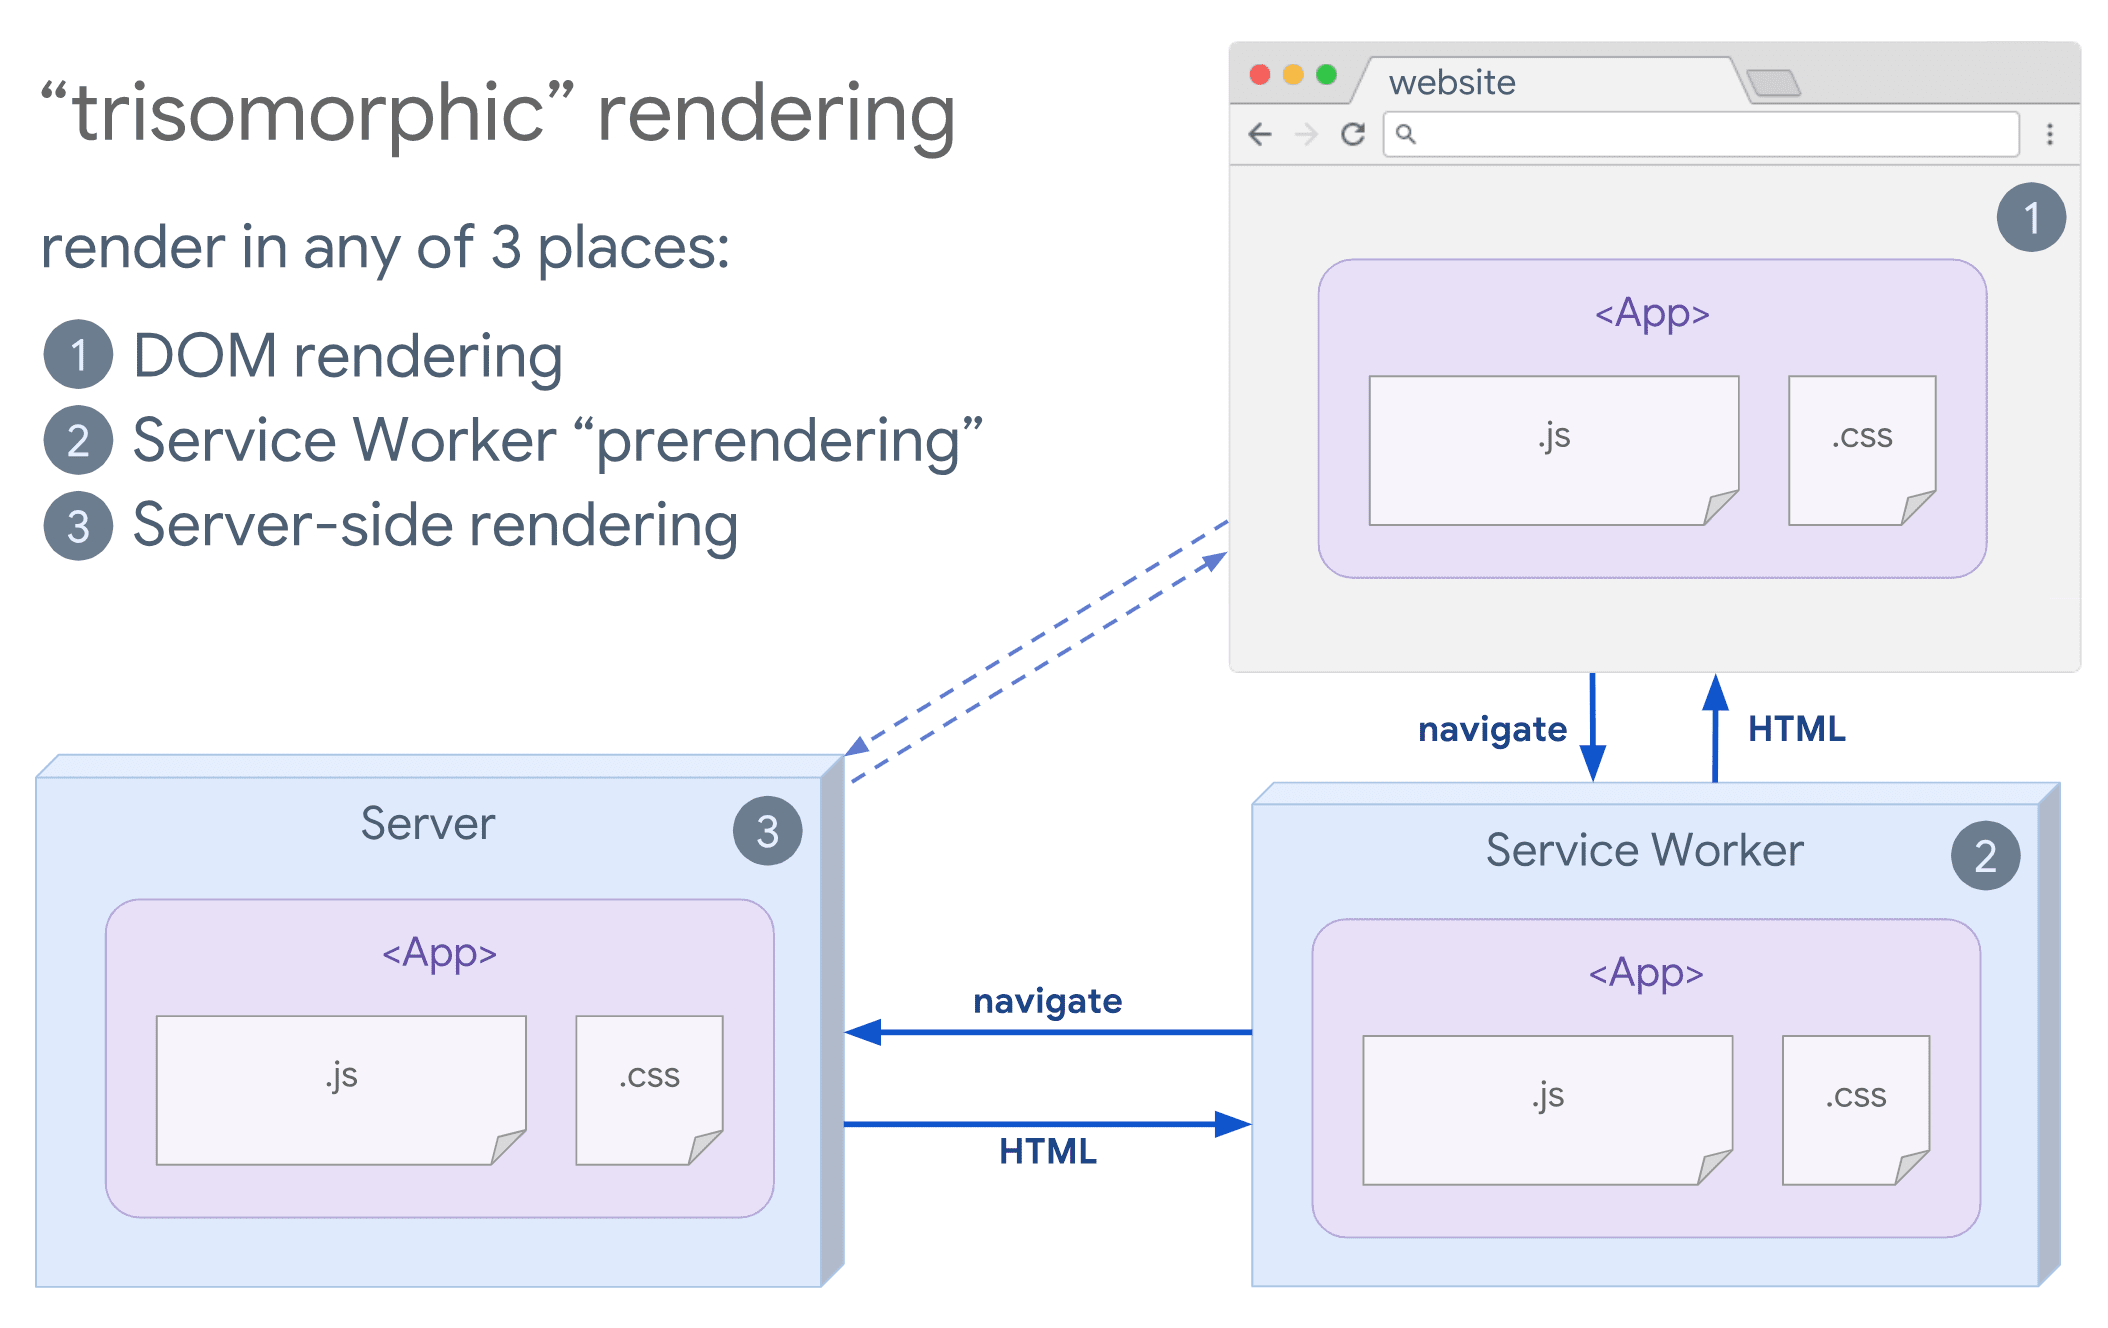 Diagrama de la renderización trisomórfica en el que se muestra un navegador y un service worker comunicándose con el servidor.